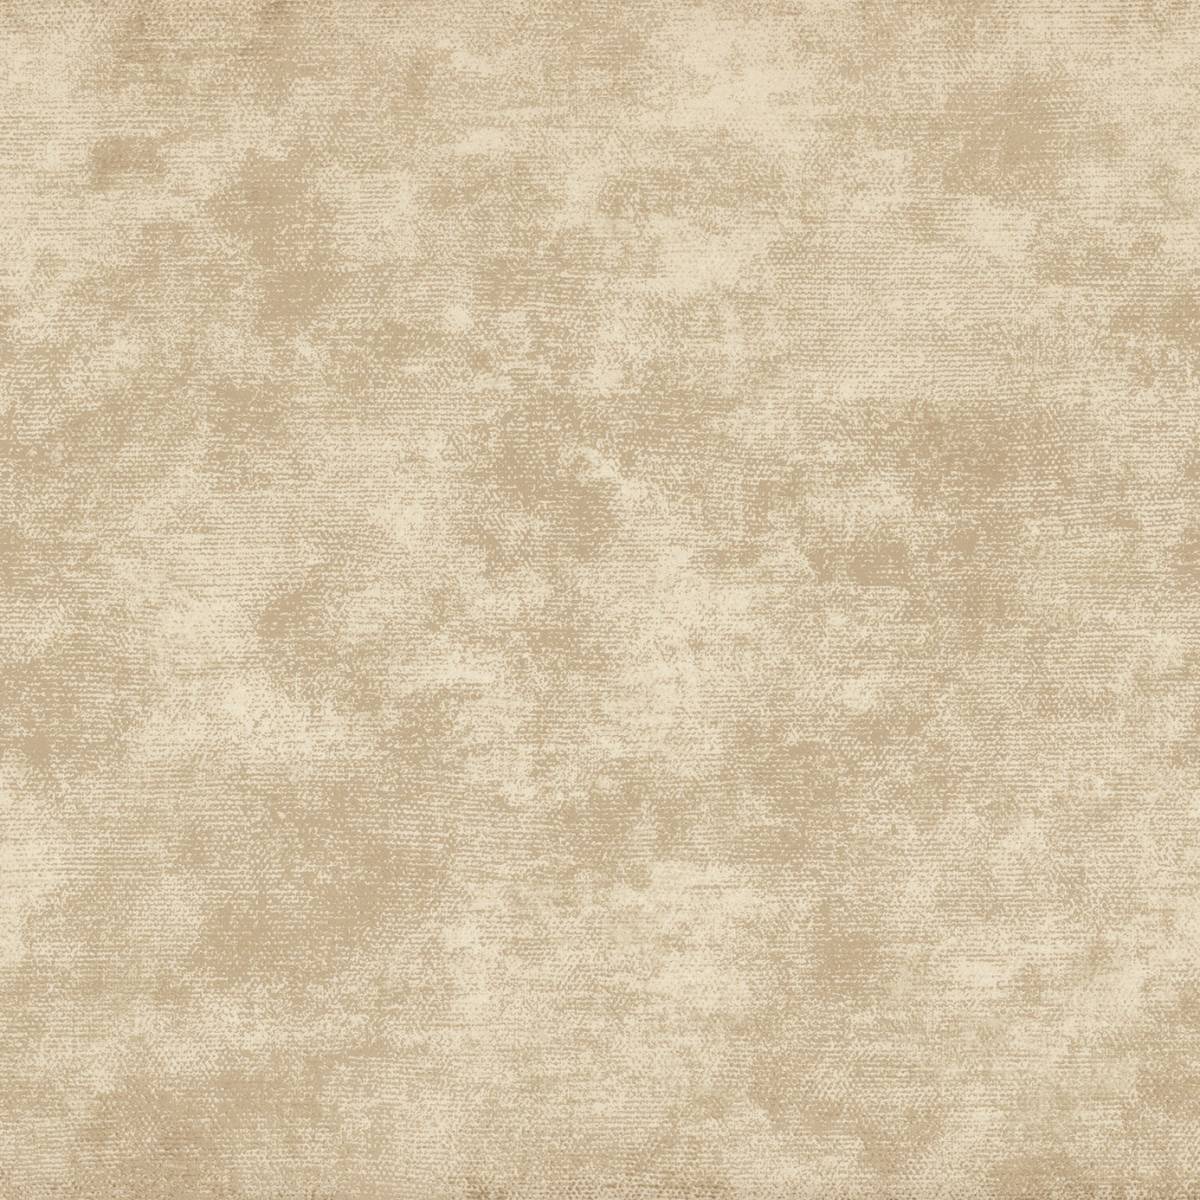 plaster wallpaper,brown,beige,flooring,floor,tile